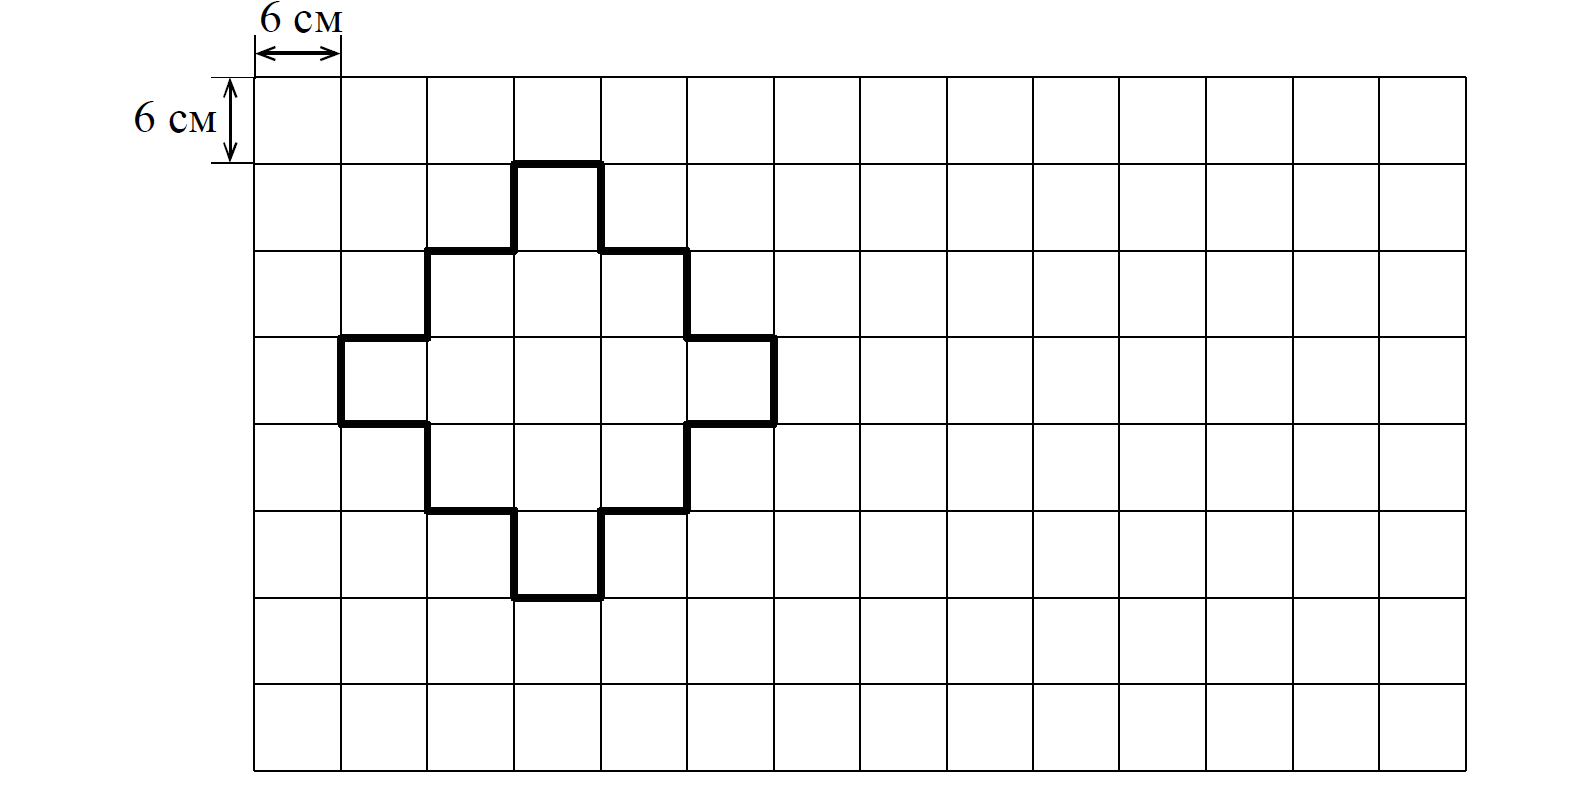 Из кубиков собрали фигуру впр 5 класс. Поле расчерченное на квадраты. На рисунке дано поле расчерченное на квадраты. Прямоугольники расчерченные на квадратные см. На рисунке дано поле расчерченное на квадраты со стороной 6.